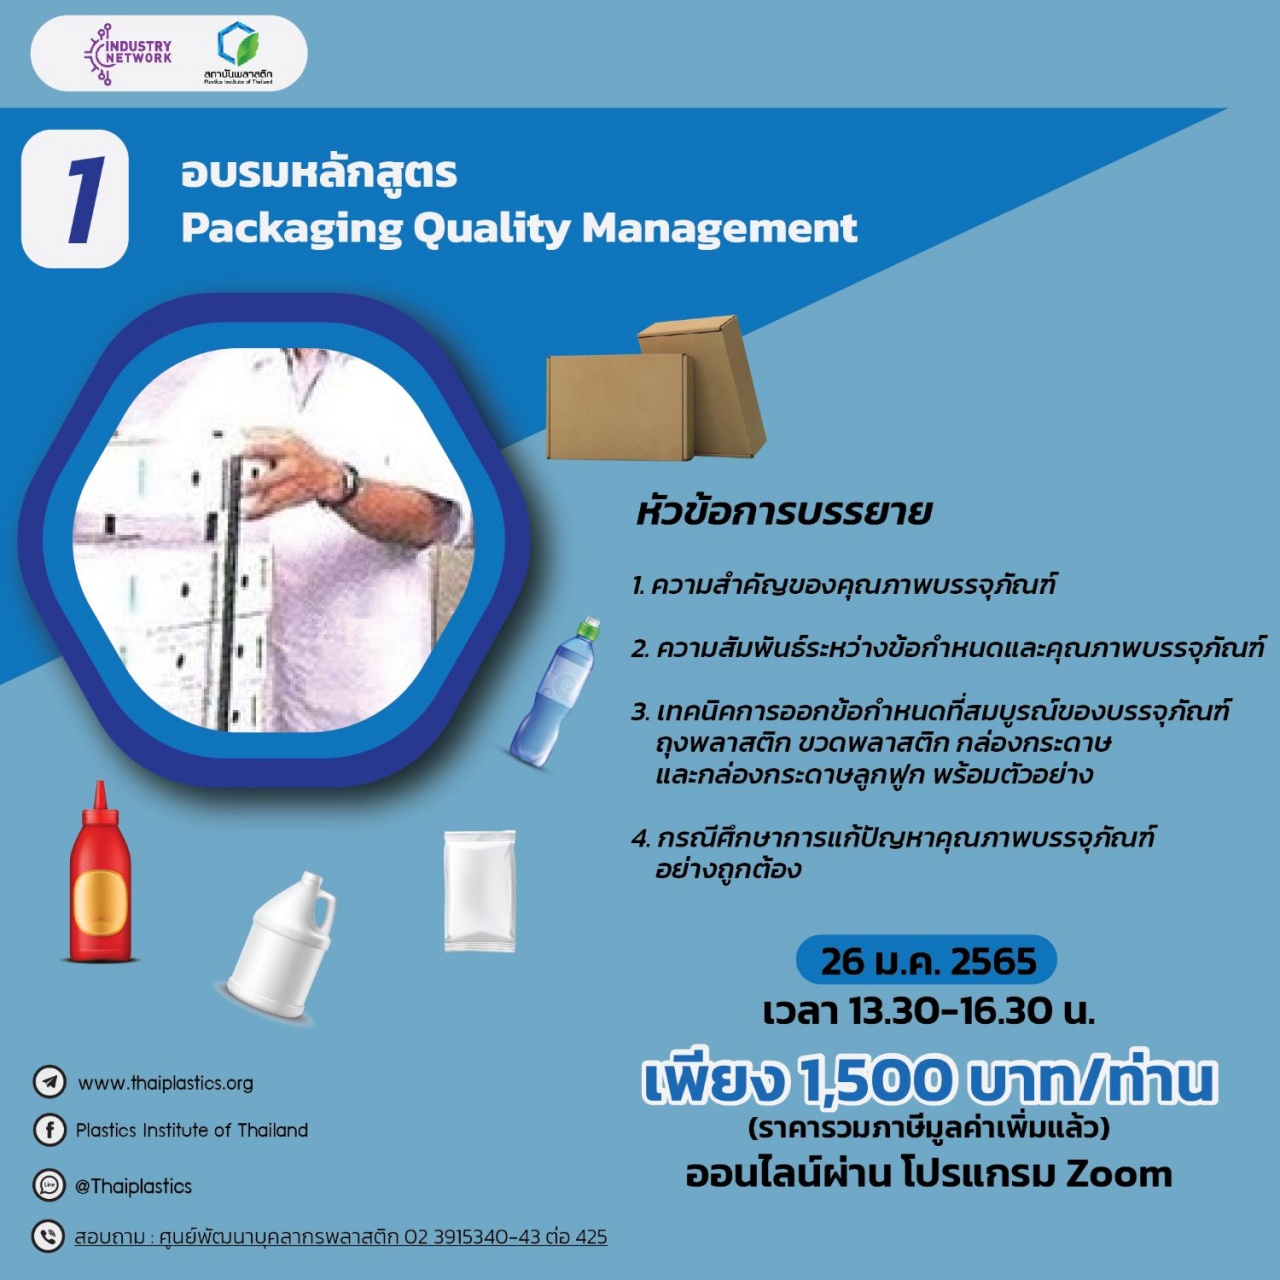 หลักสูตร Packaging Quality Management  ออนไลน์